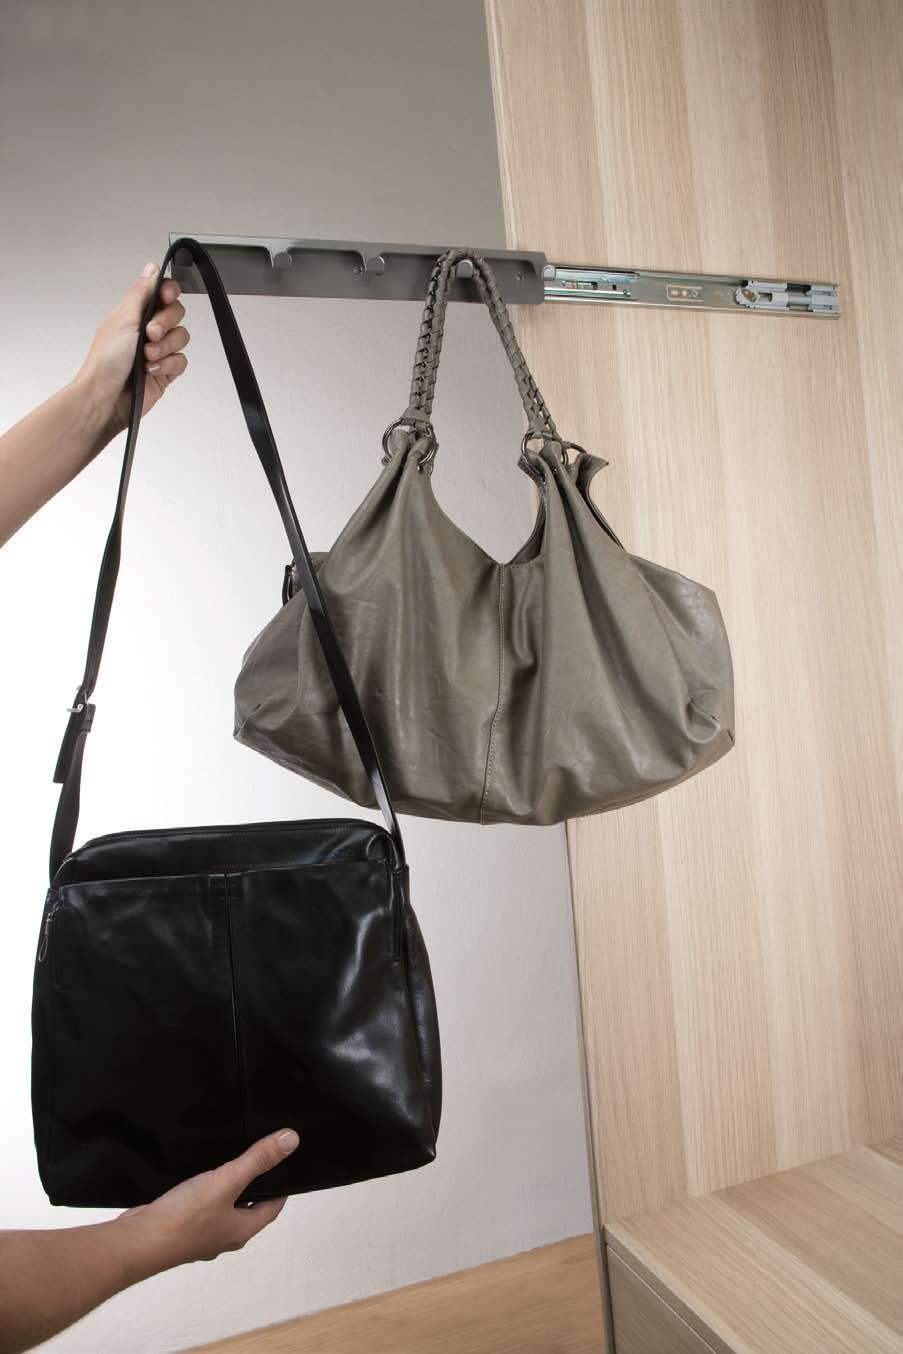 BARRA PORTABOLSOS Holder for handbags BARRA Pull-out holder